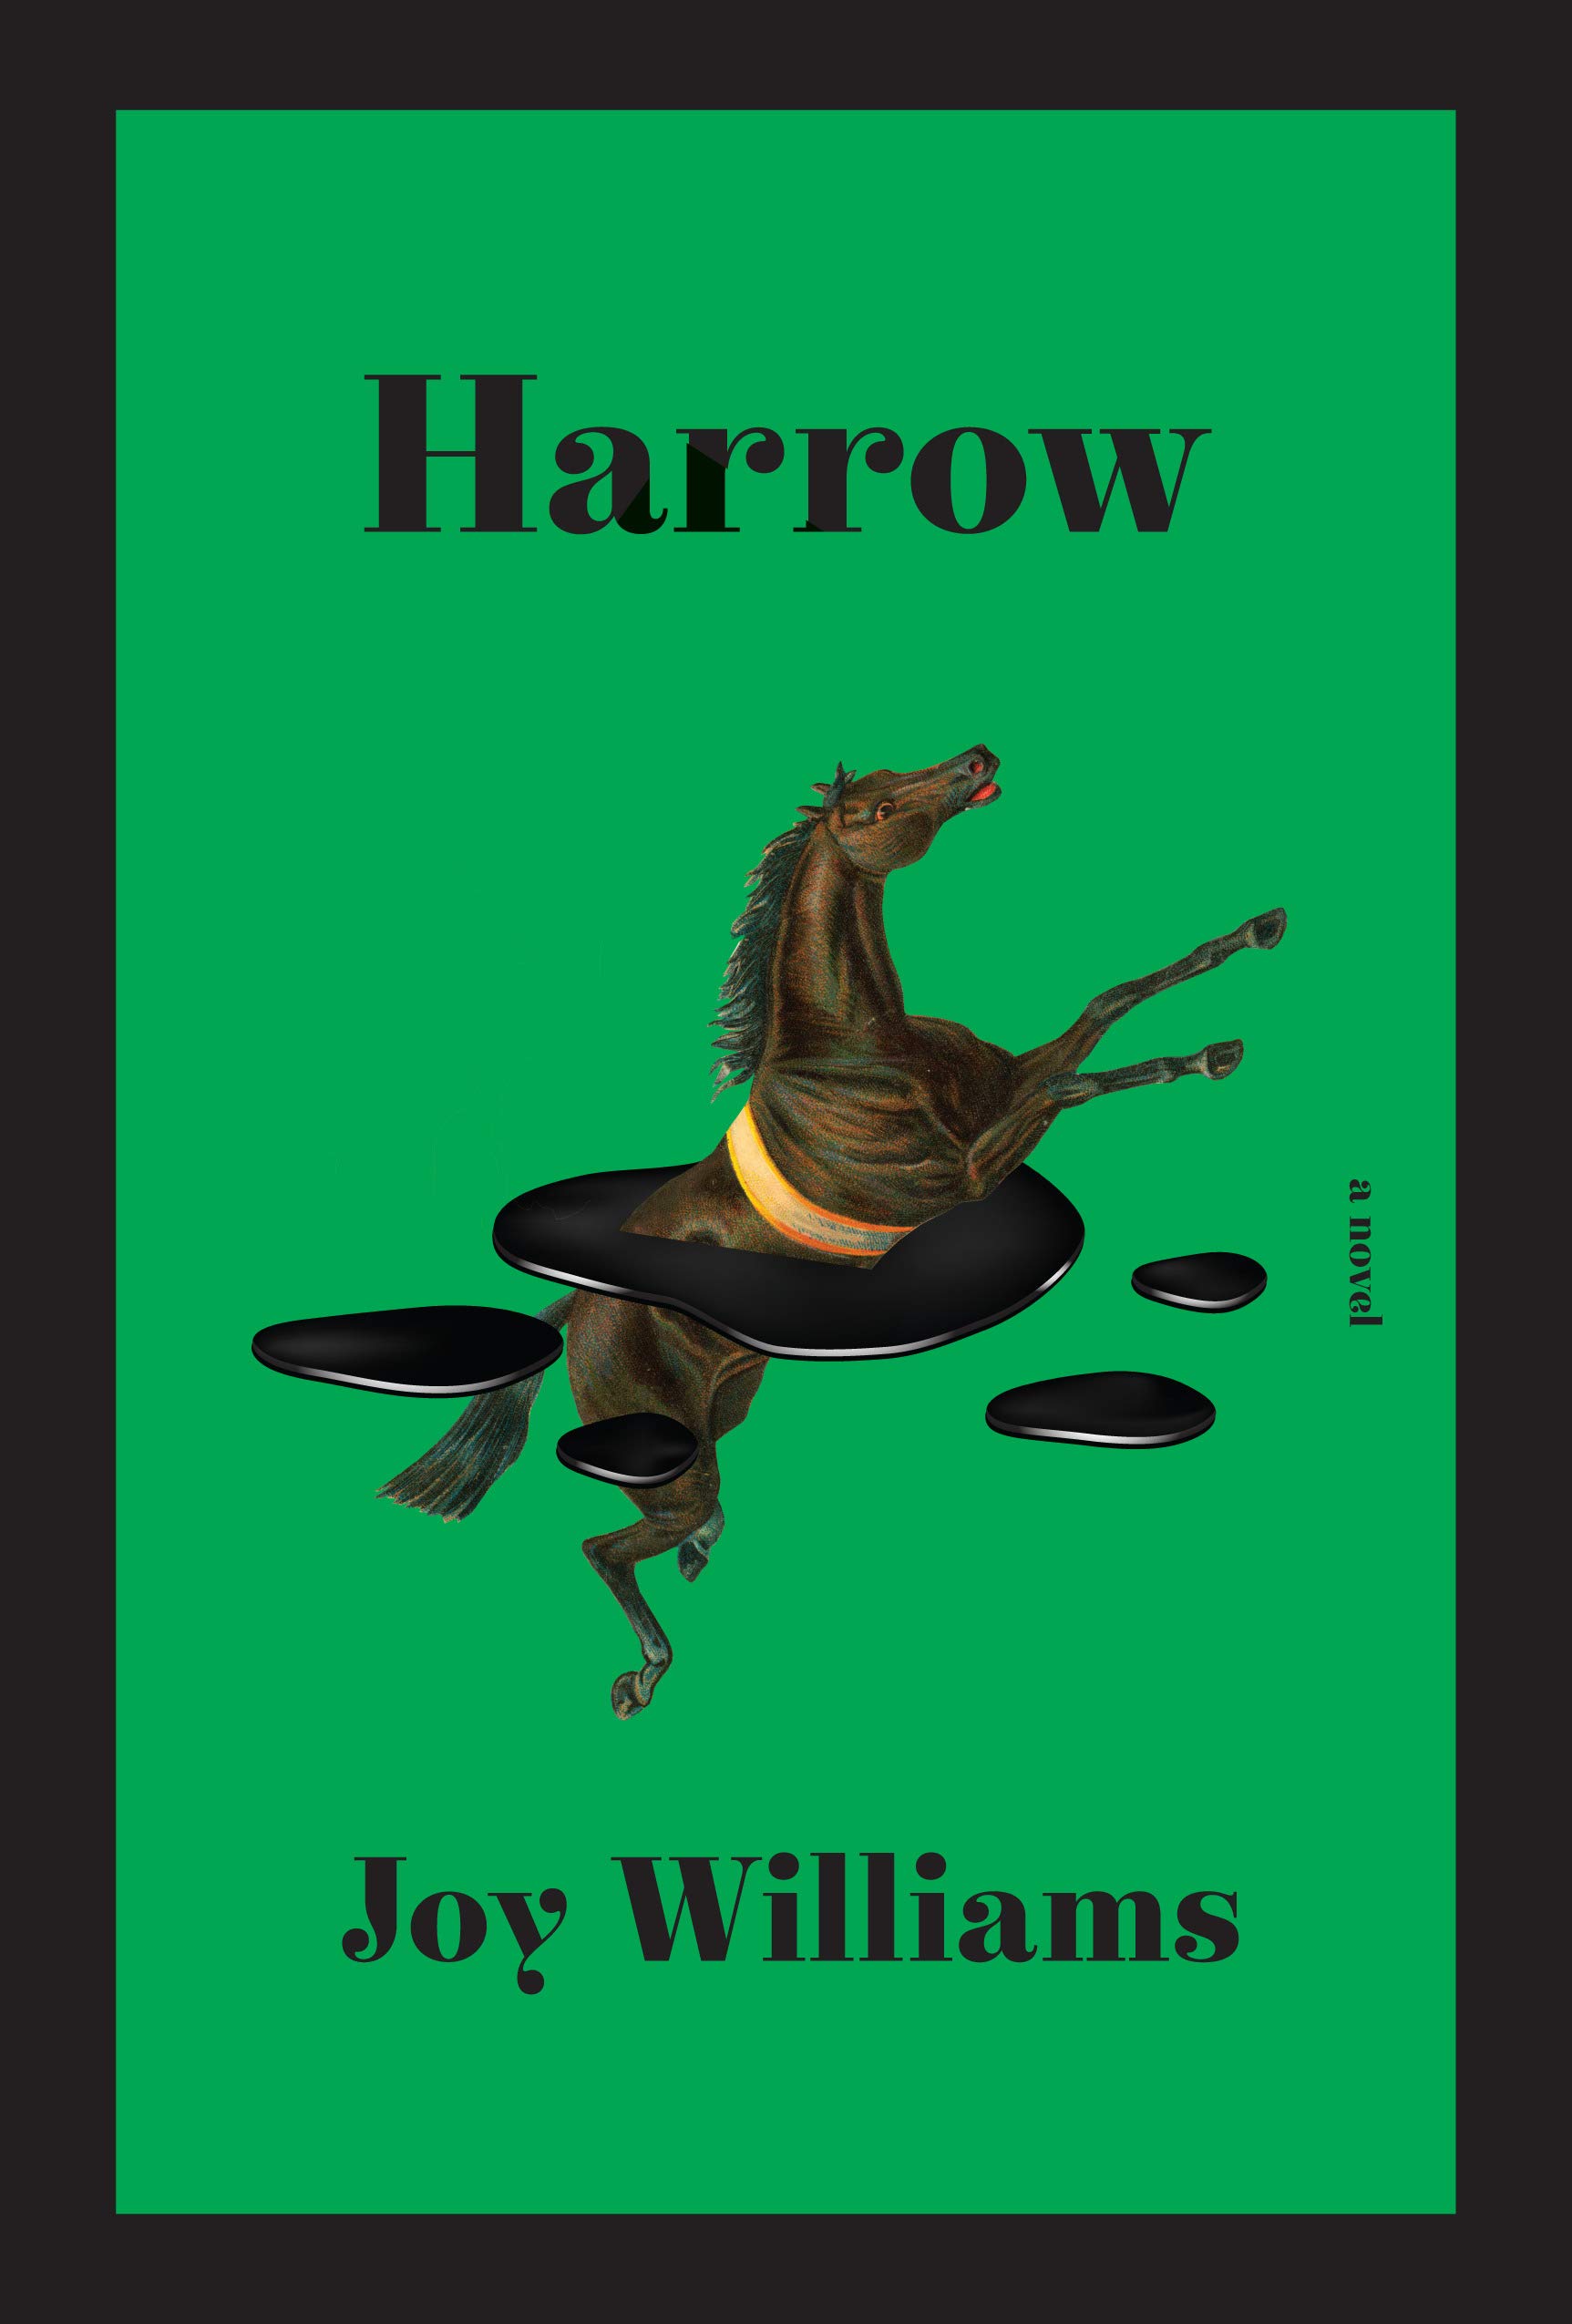 Joy Williams, Harrow